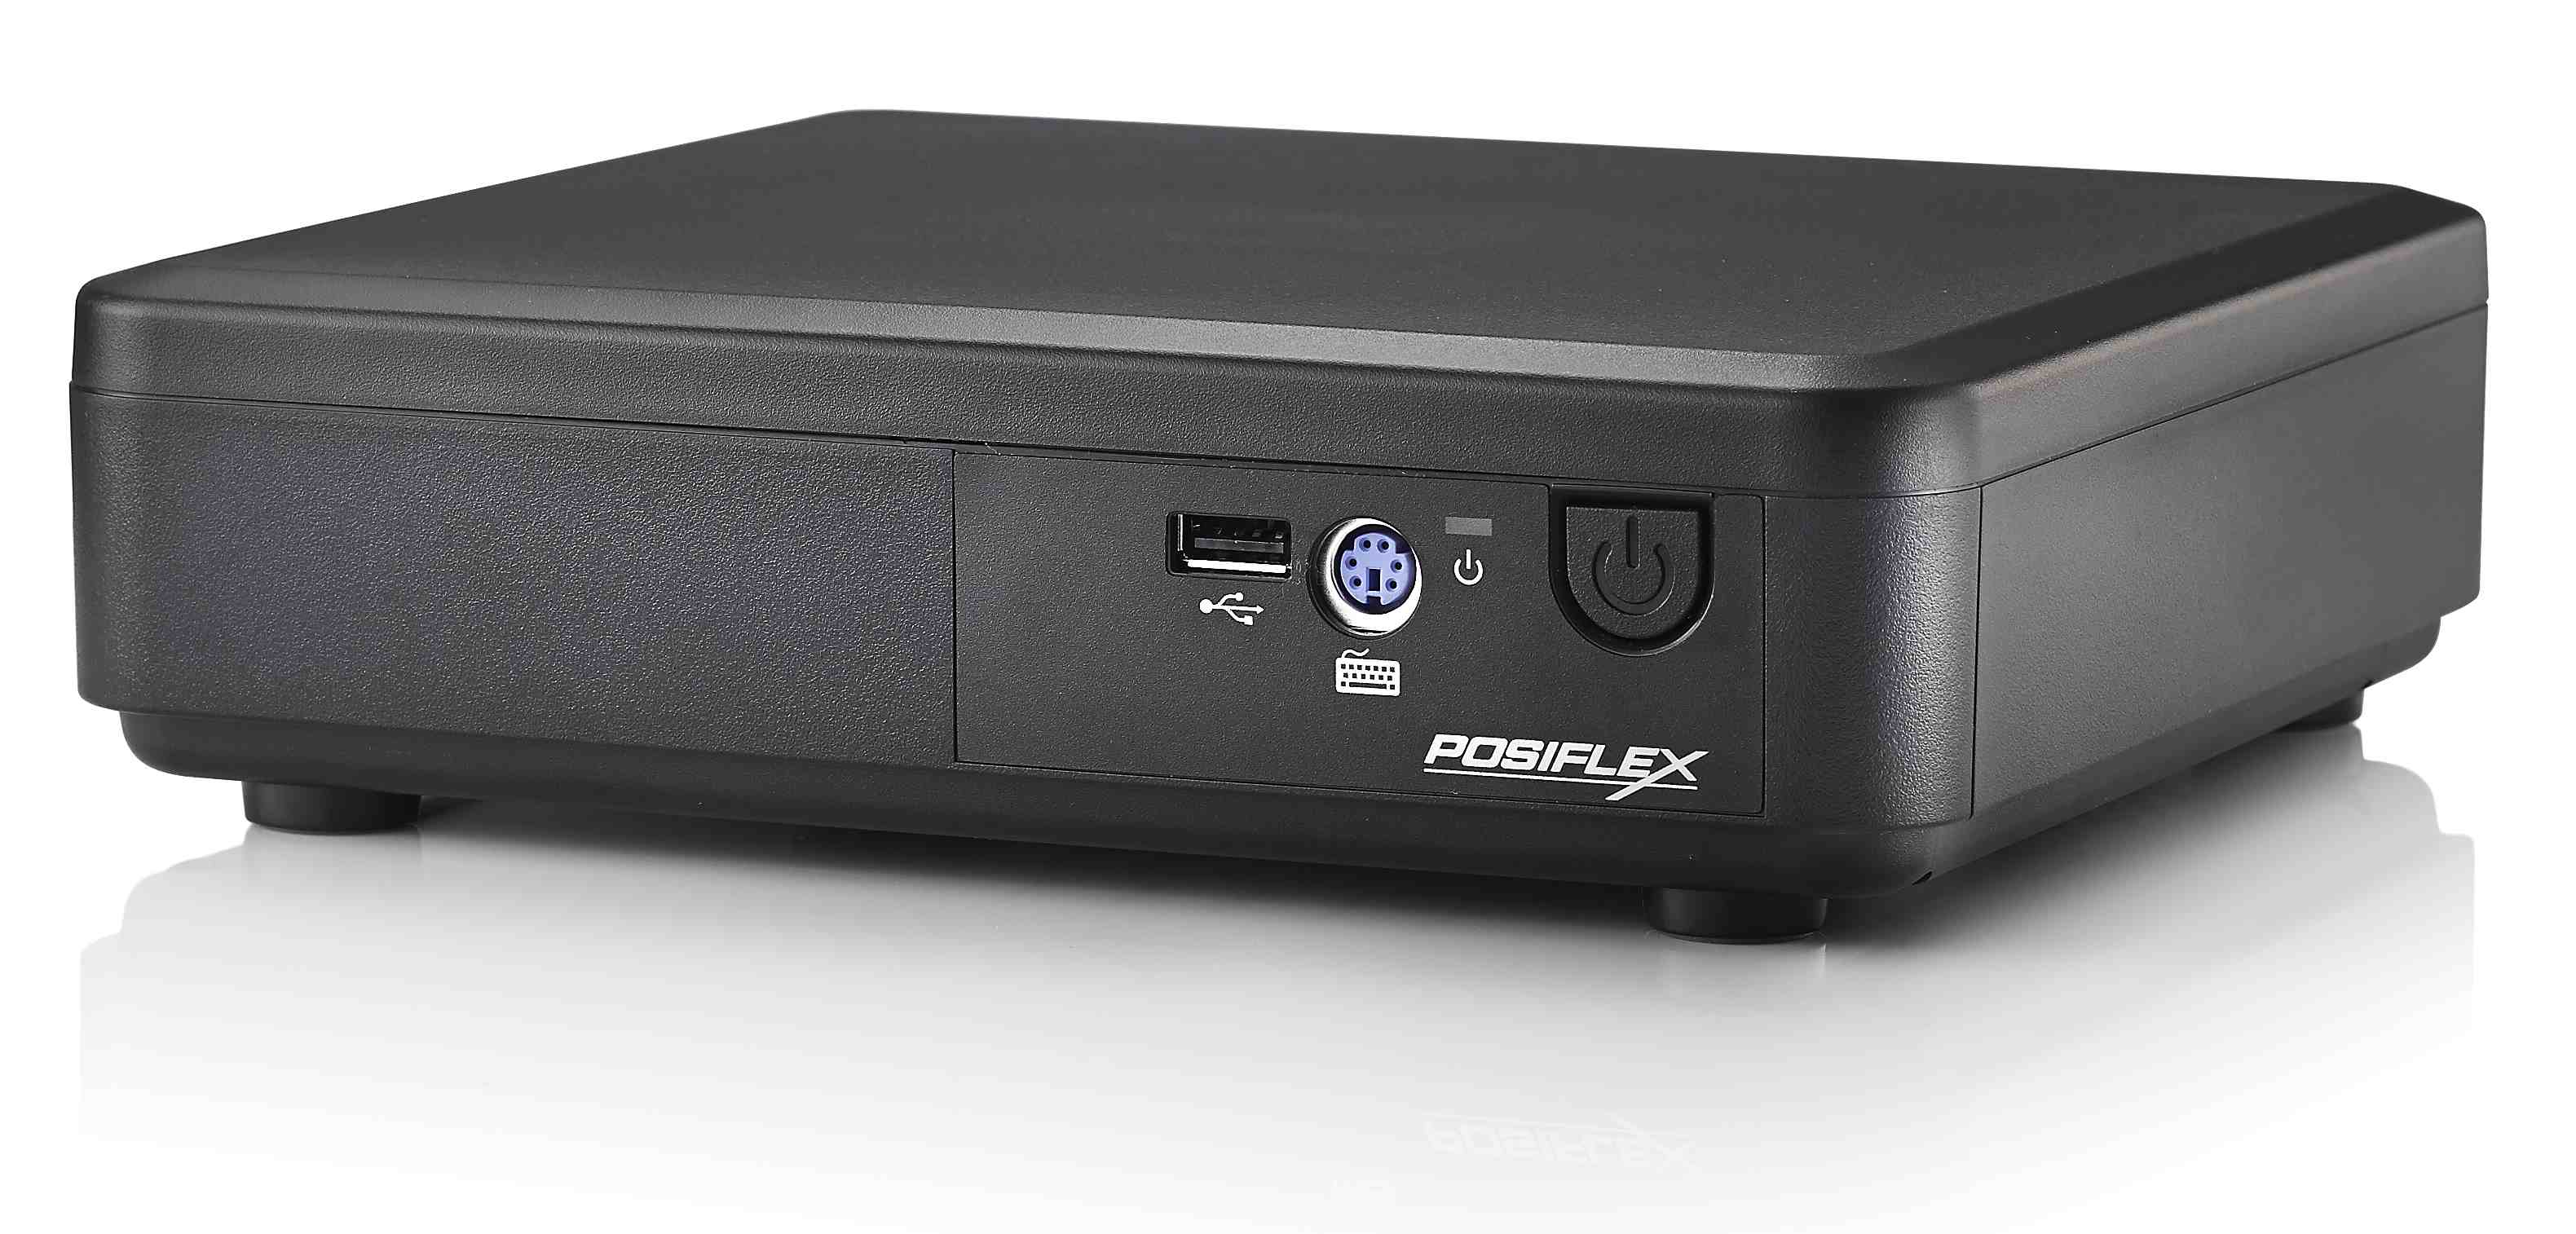 POS-компьютер Posiflex TX-2100